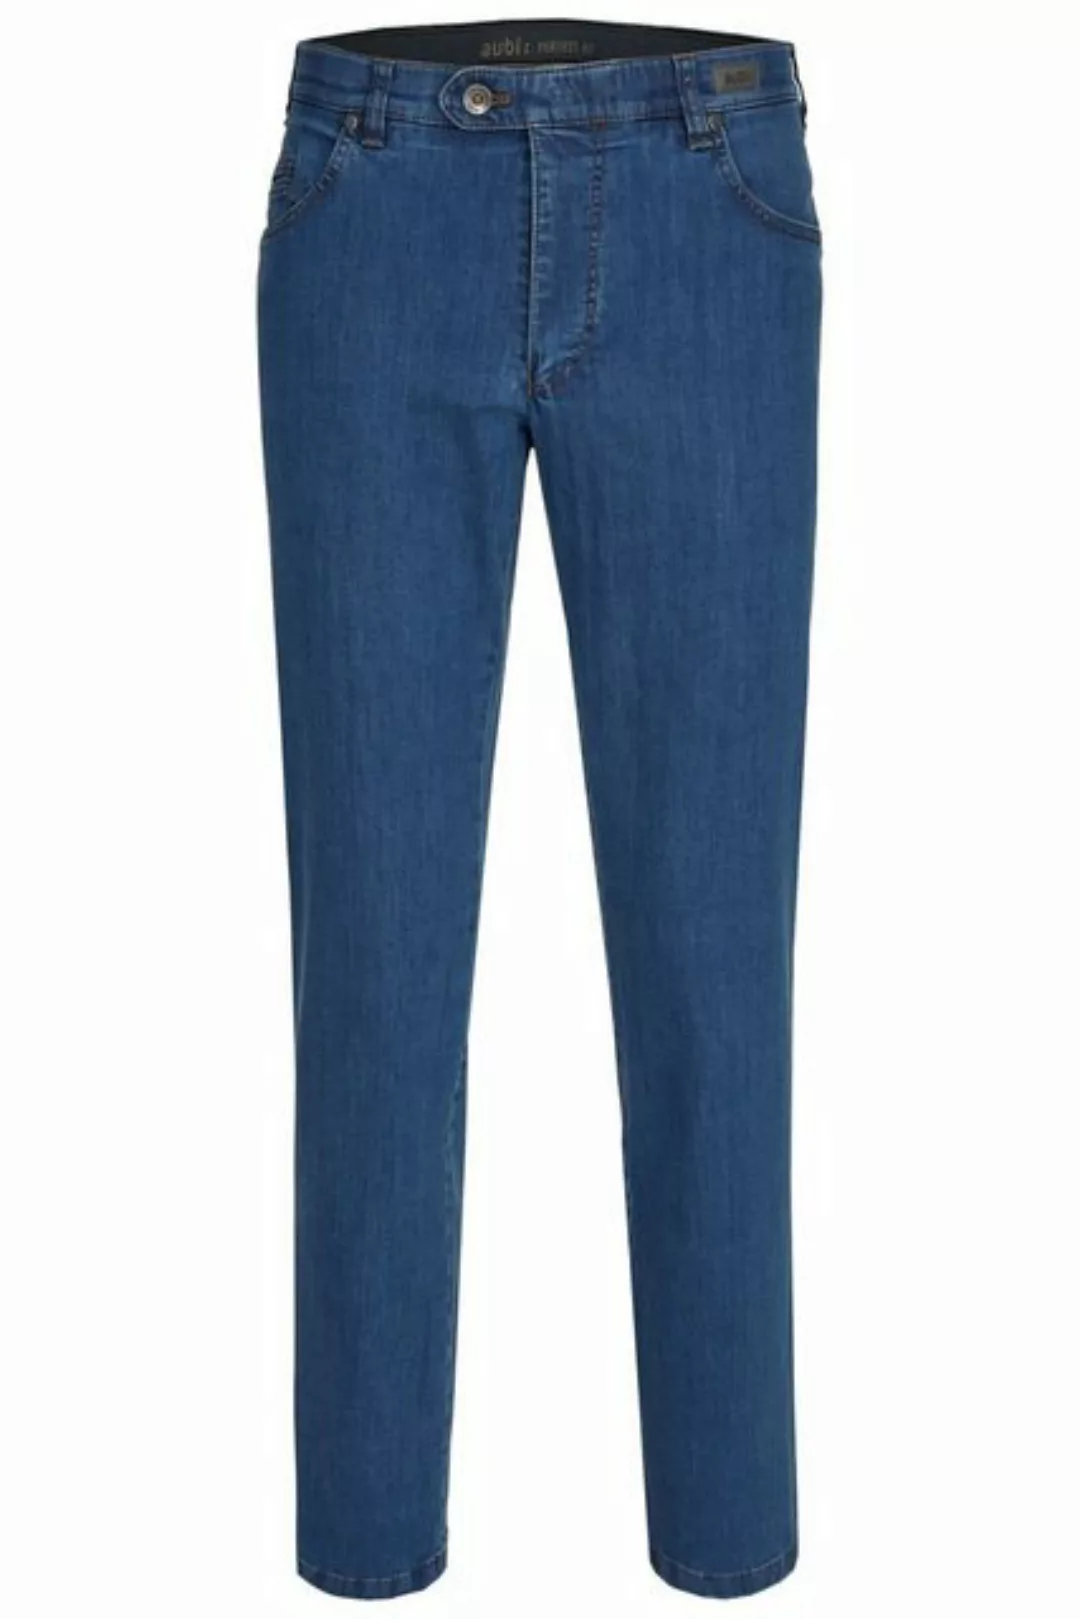 aubi: Bequeme Jeans aubi Perfect Fit Herren Sommer Jeans Hose Stretch aus B günstig online kaufen